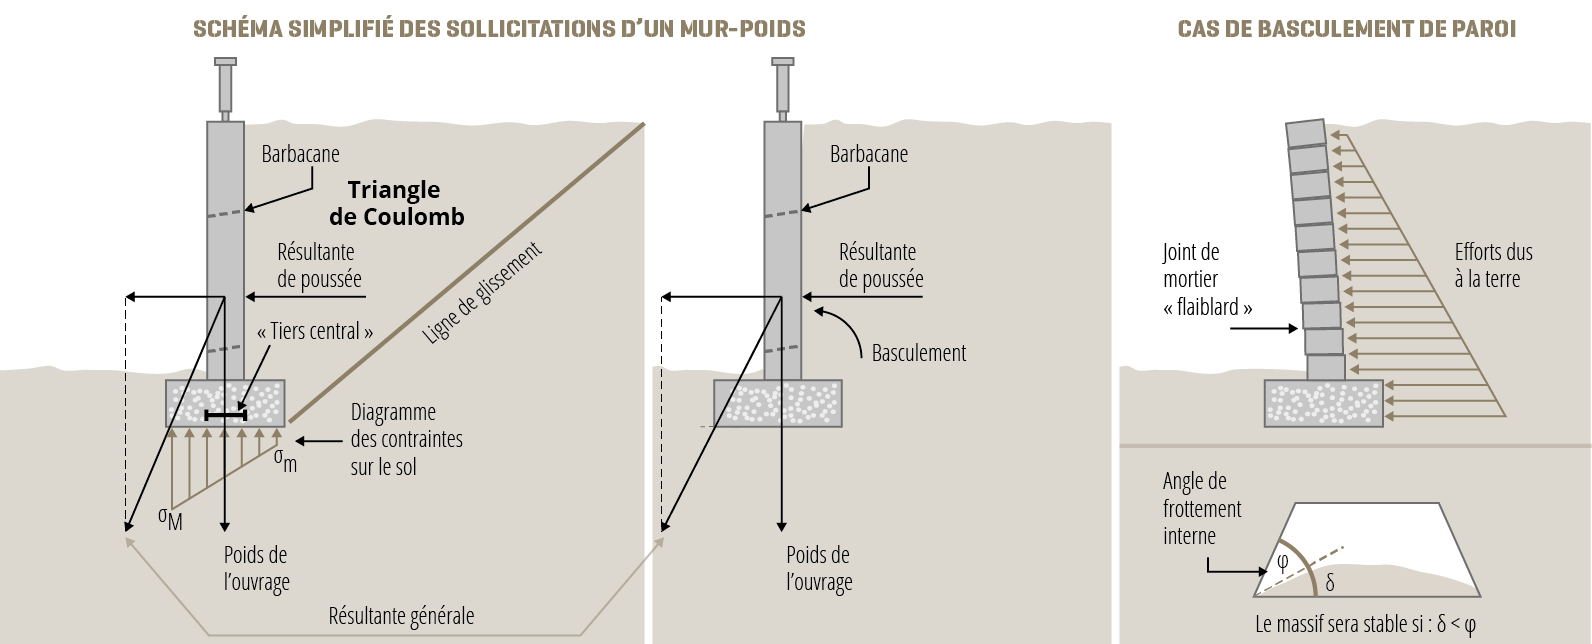 Schéma simplifié des sollicitations d'un mur-poids et exemple de cas de basculement de paroi